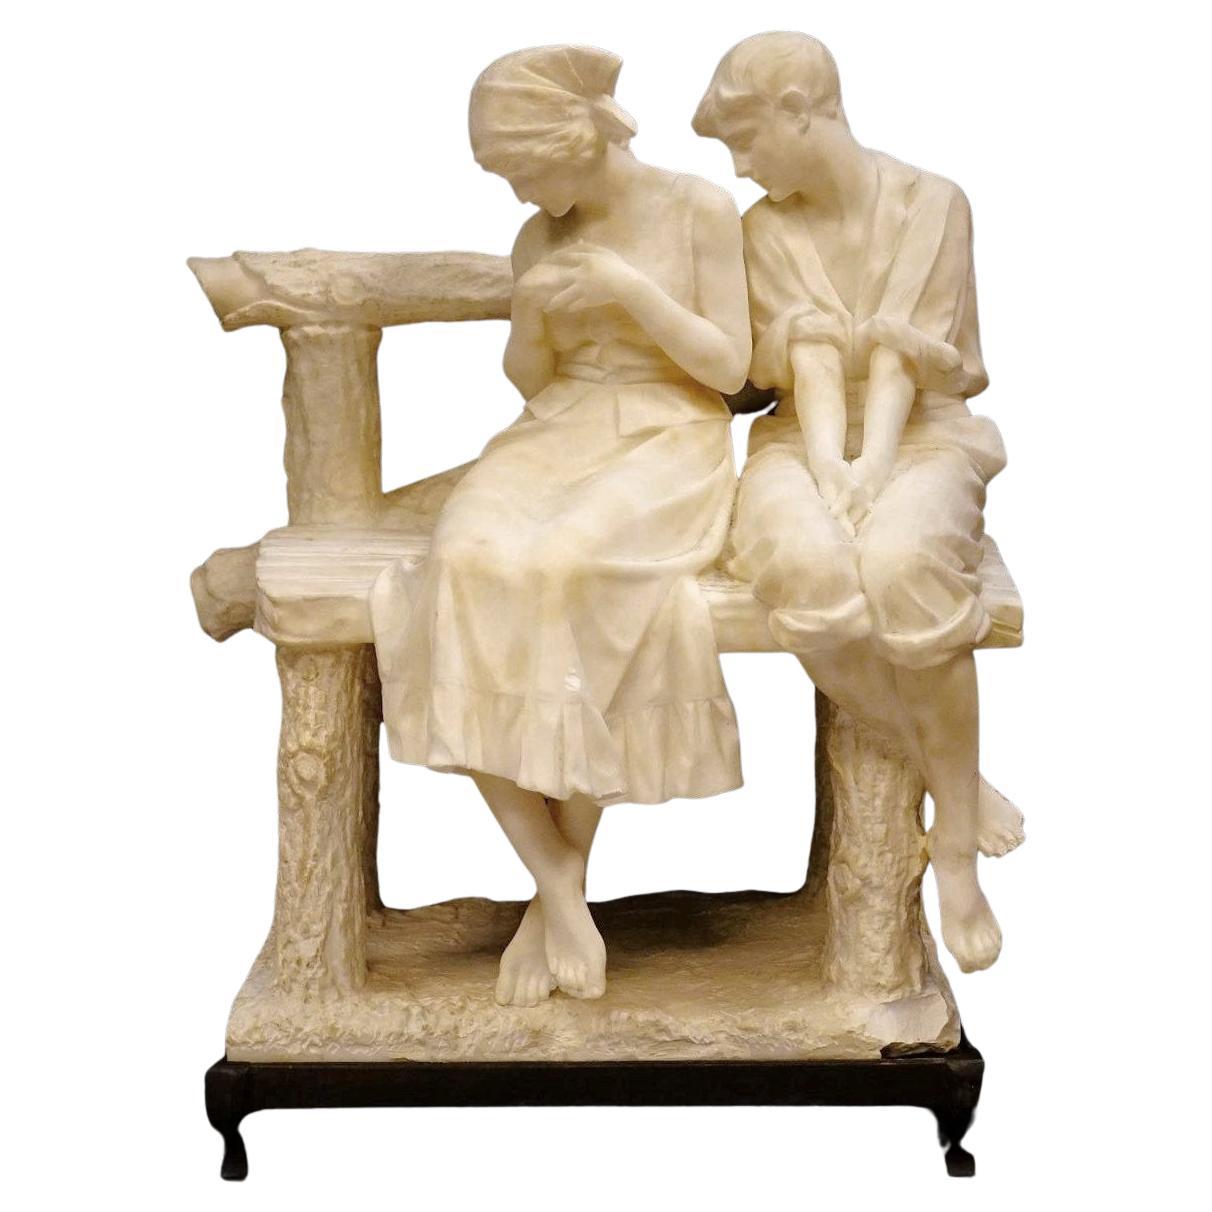 Umberto Stiaccini zugeschriebene Alabaster-Skulptur eines Beistellpaares